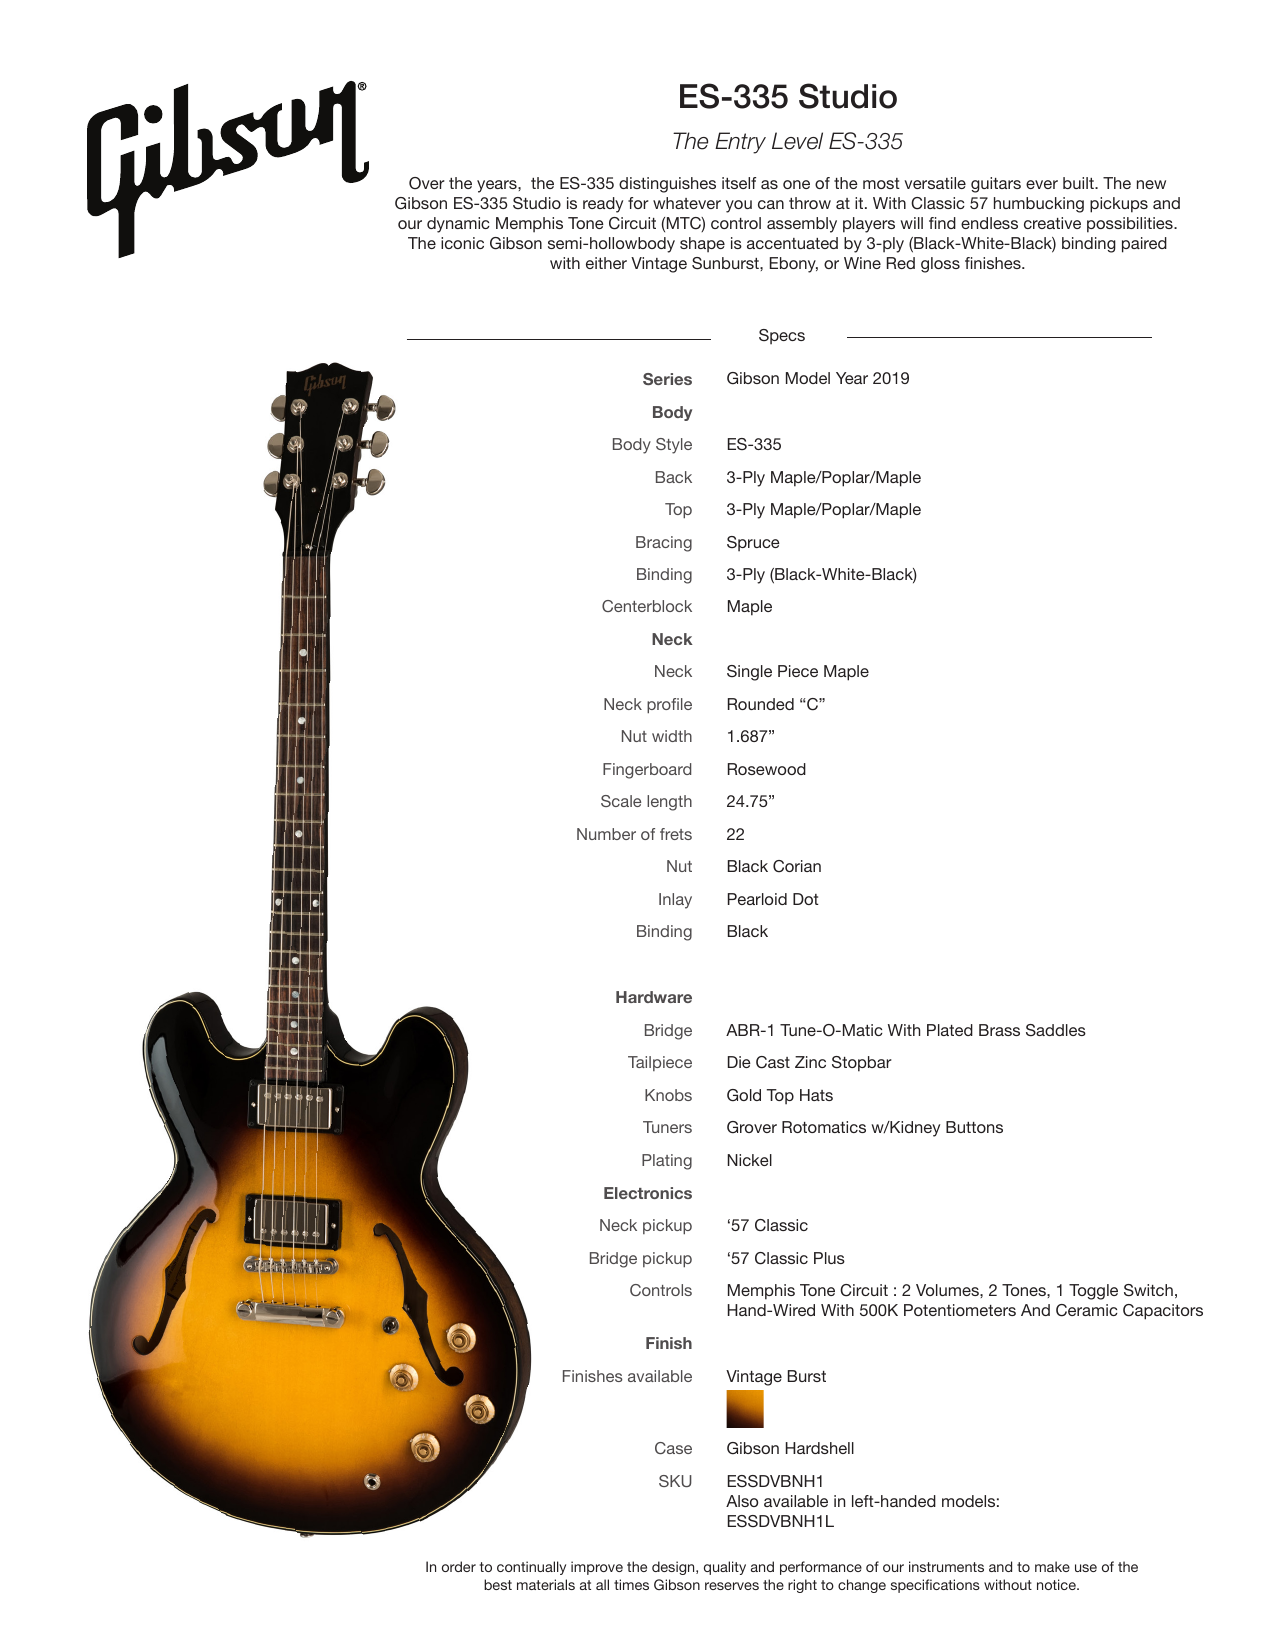 Gibson ES-335 Studio 2019 Spec Sheet | Manualzz